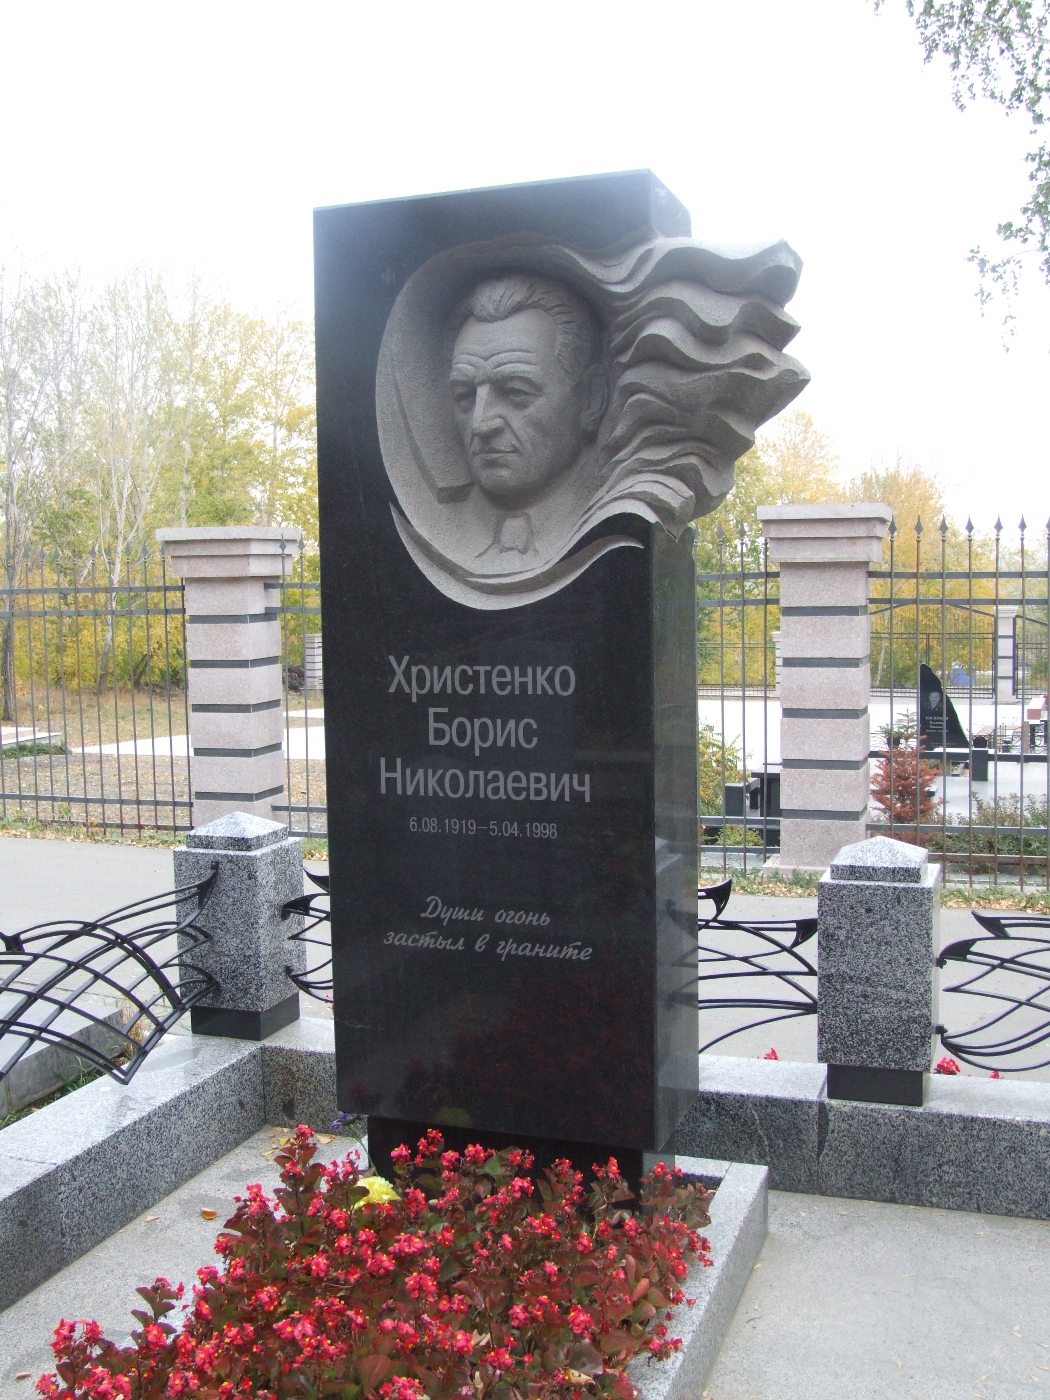 Надгробие на могиле Христенко Б.Н. (1919-1998), Челябинск, Успенское кладбище, квартал 54.